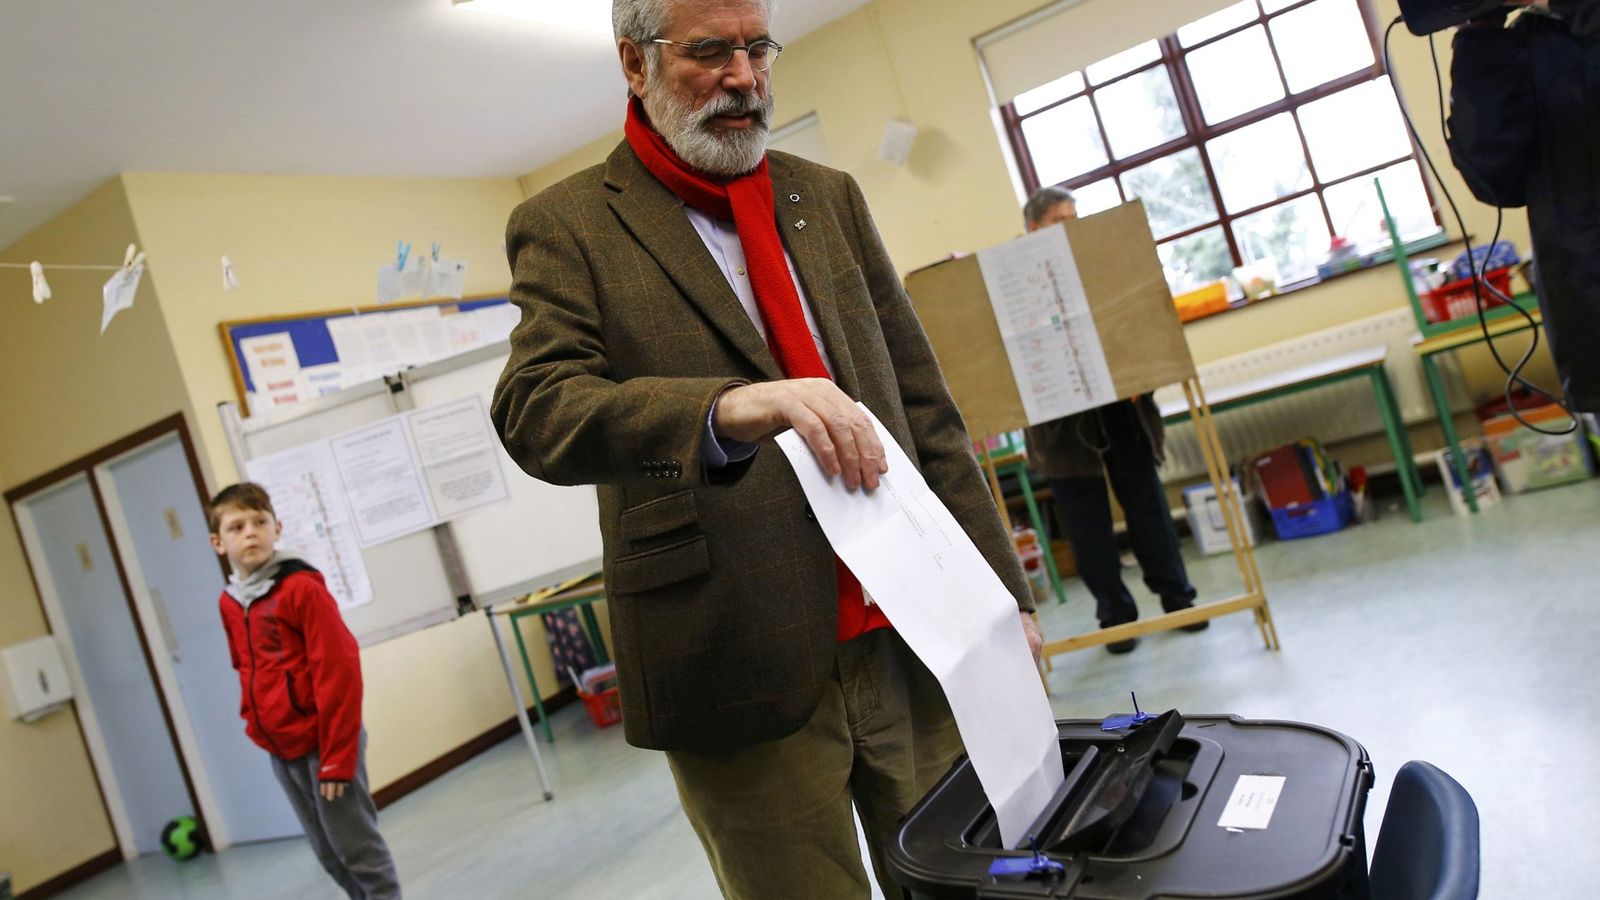 Foto: Gerry Adams, líder del Sinn Féin, vota en un colegio electoral de Ravensdale, Irlanda, el 26 de febrero de 2016 (Reuters).